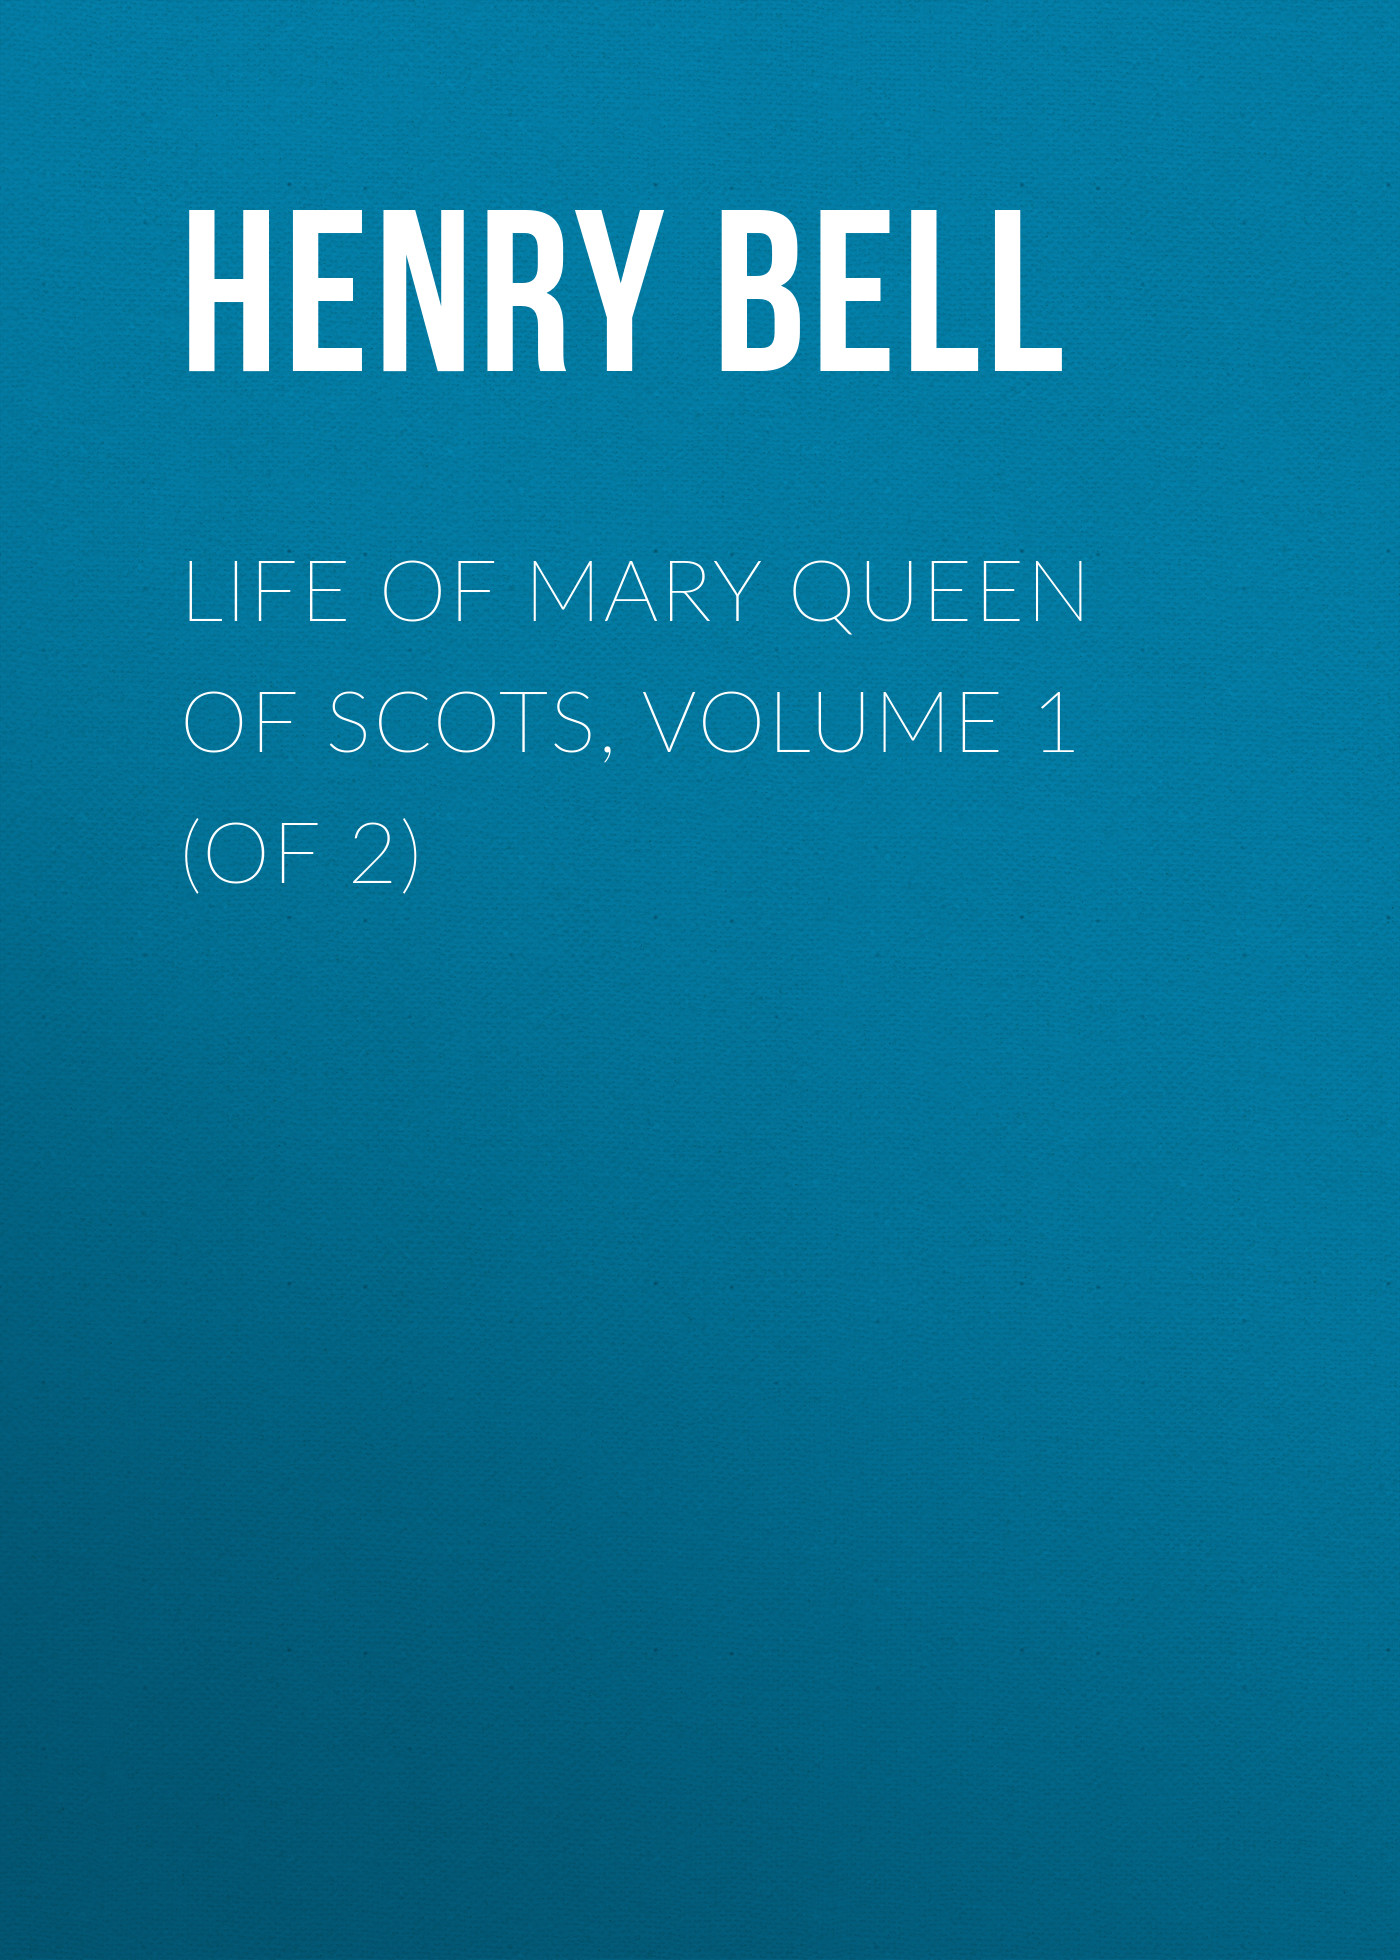 Книга Life of Mary Queen of Scots, Volume 1 (of 2) из серии , созданная Henry Bell, может относится к жанру Зарубежная старинная литература, Зарубежная классика. Стоимость электронной книги Life of Mary Queen of Scots, Volume 1 (of 2) с идентификатором 24168404 составляет 0.90 руб.